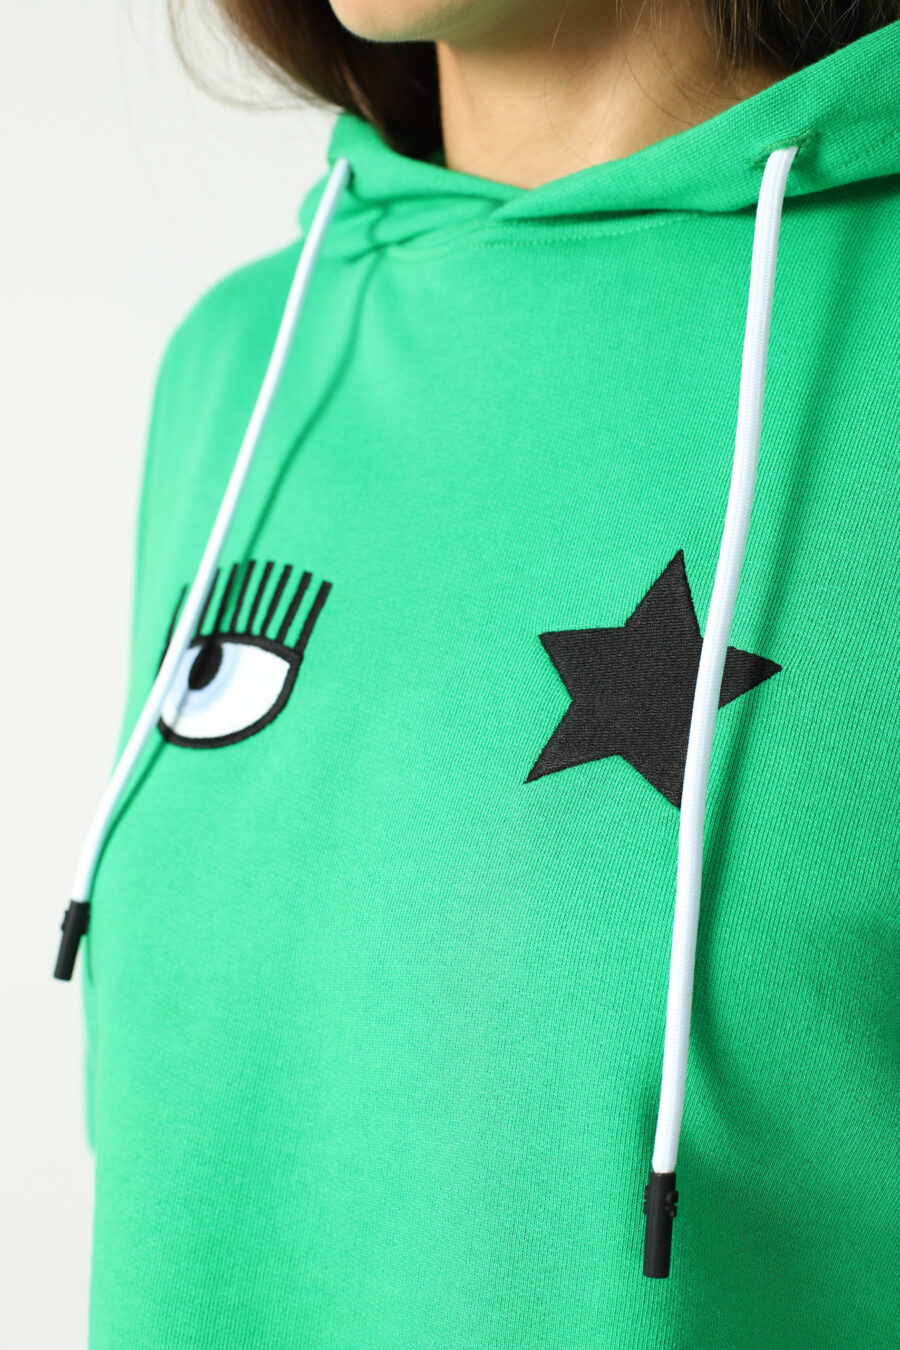 Sudadera manga corta verde con capucha y logo ojo y estrella - Photos 2595